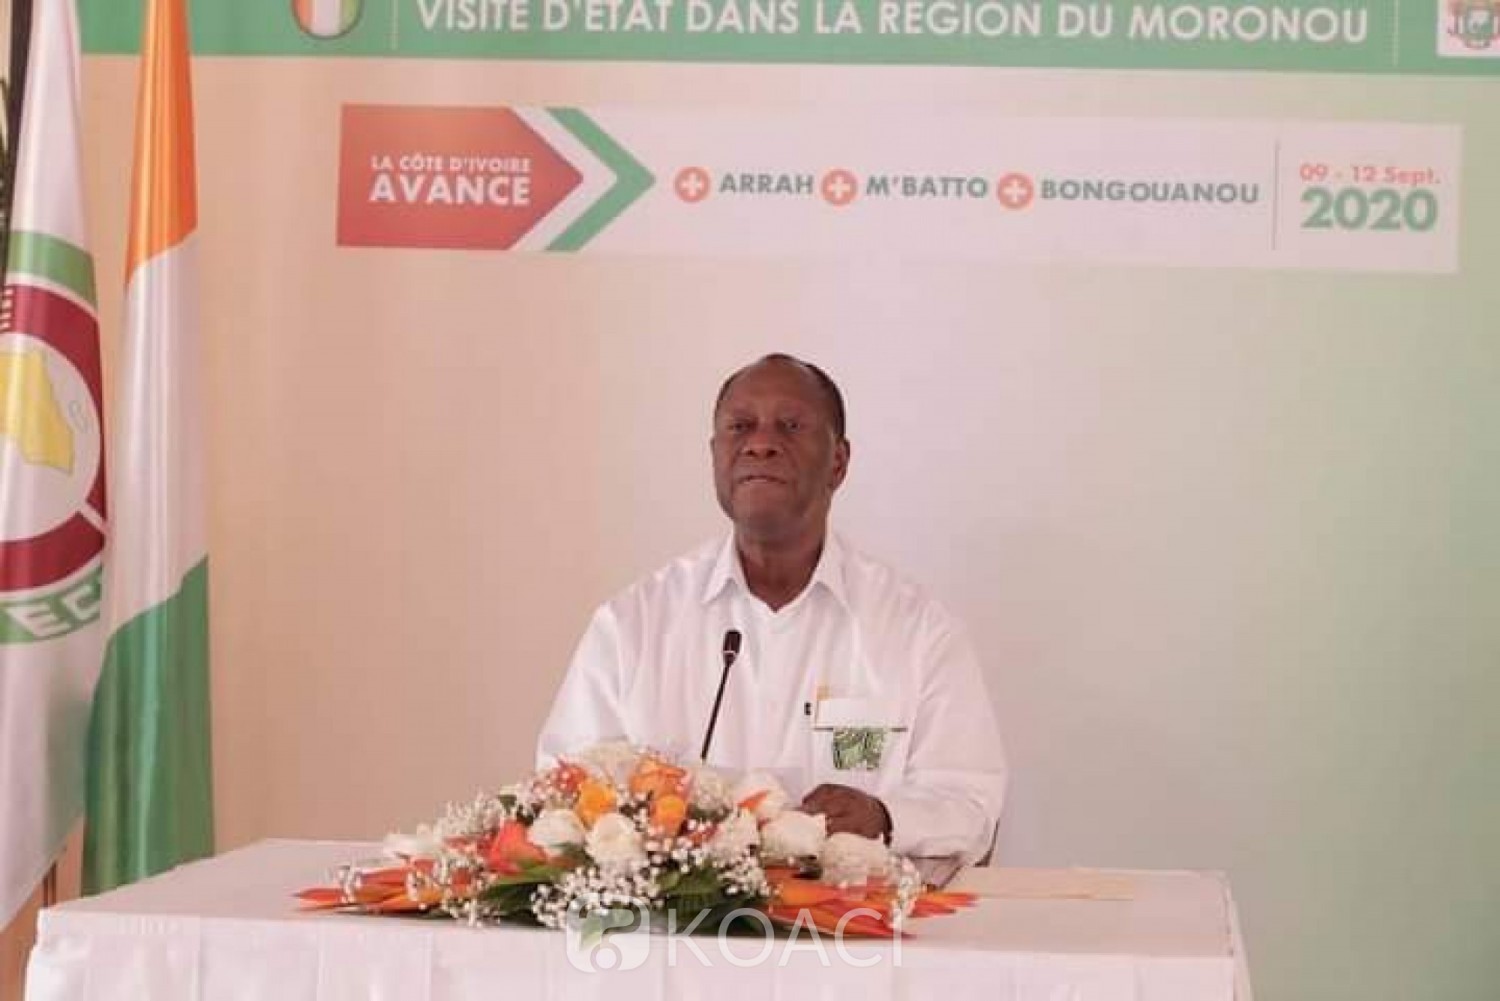 Côte d'Ivoire:    Visite d'État dans le Moronou, l'intégralité de la conférence de presse du chef de l'État